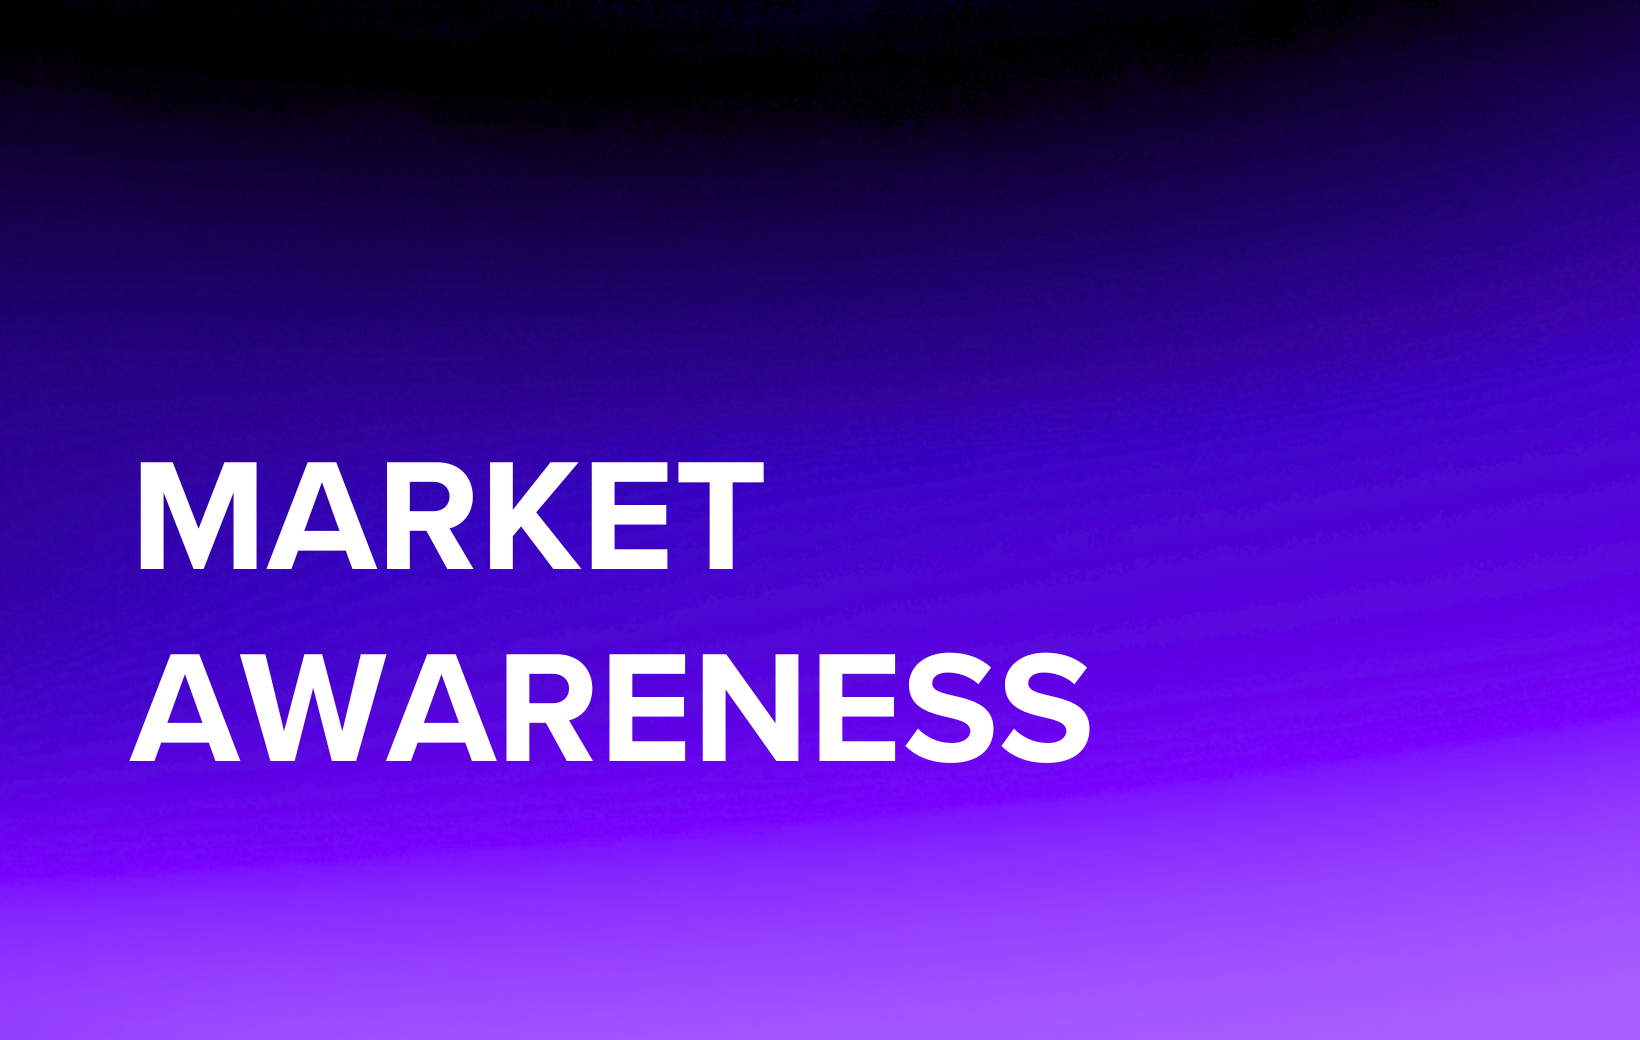 Market Awareness